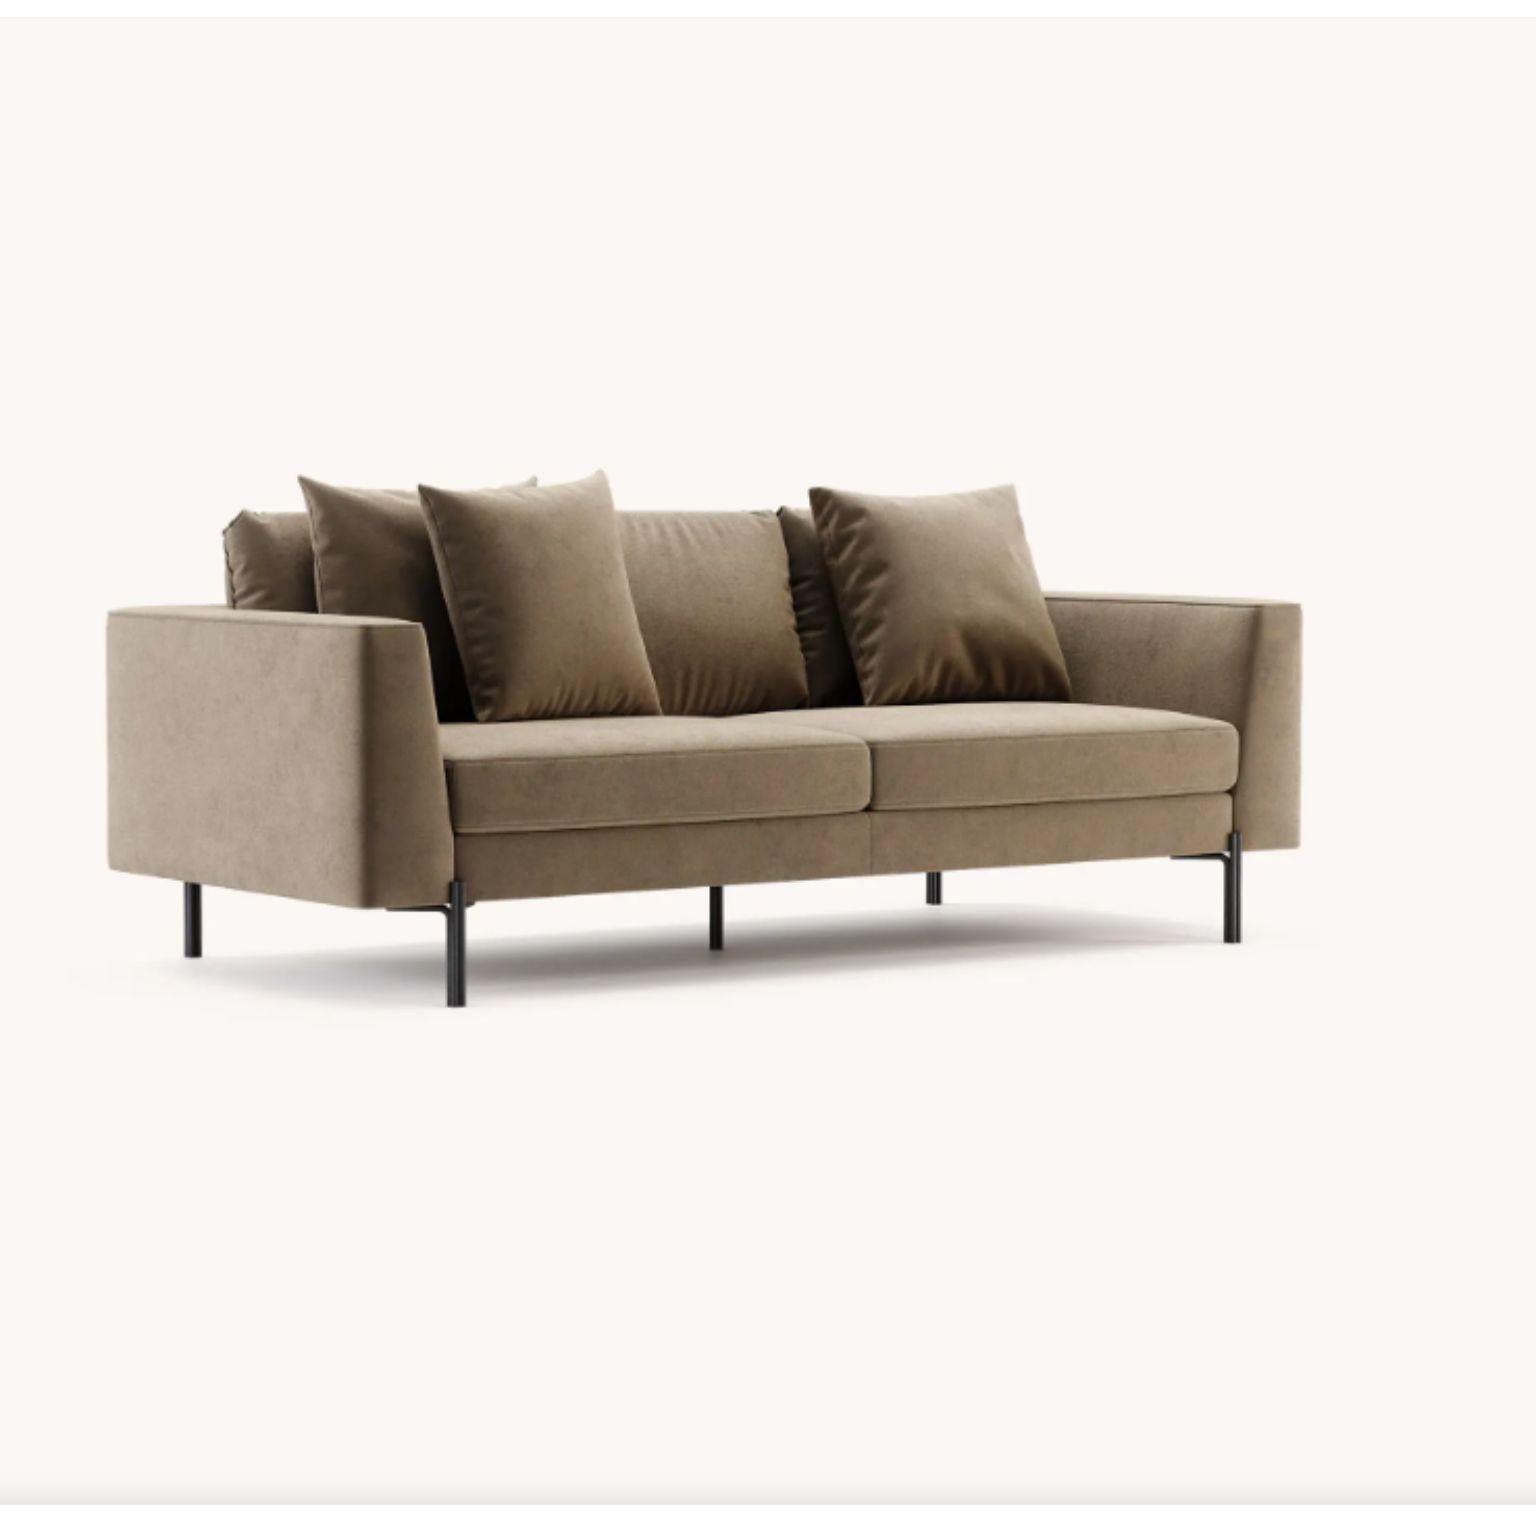 Nicole 3-Sitz-Sofa von Domkapa
MATERIALIEN: Samt (Neva 2206), schwarzer texturierter Stahl. 
Abmessungen:  B 230 x T 105 x H 90 cm.
Auch in verschiedenen MATERIALEN erhältlich. Bitte kontaktieren Sie uns.

Das britisch inspirierte Design ist das,